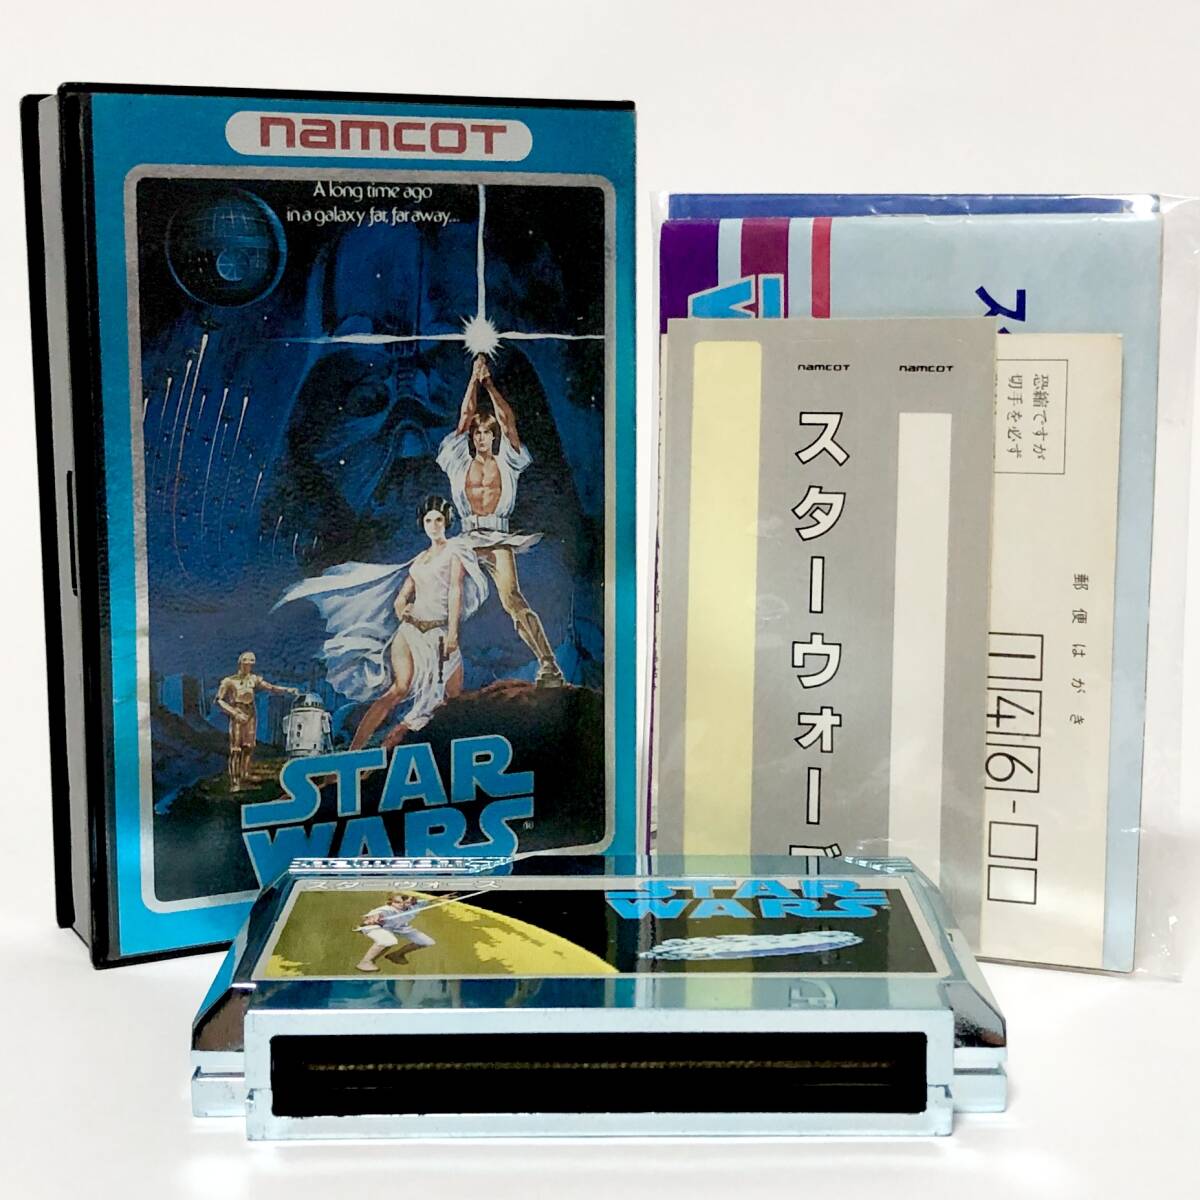 ファミコン スターウォーズ ナムコ版 箱説付き 痛みあり ナムコ ナムコット Nintendo Famicom Star Wars CIB Tested Namco Namcot